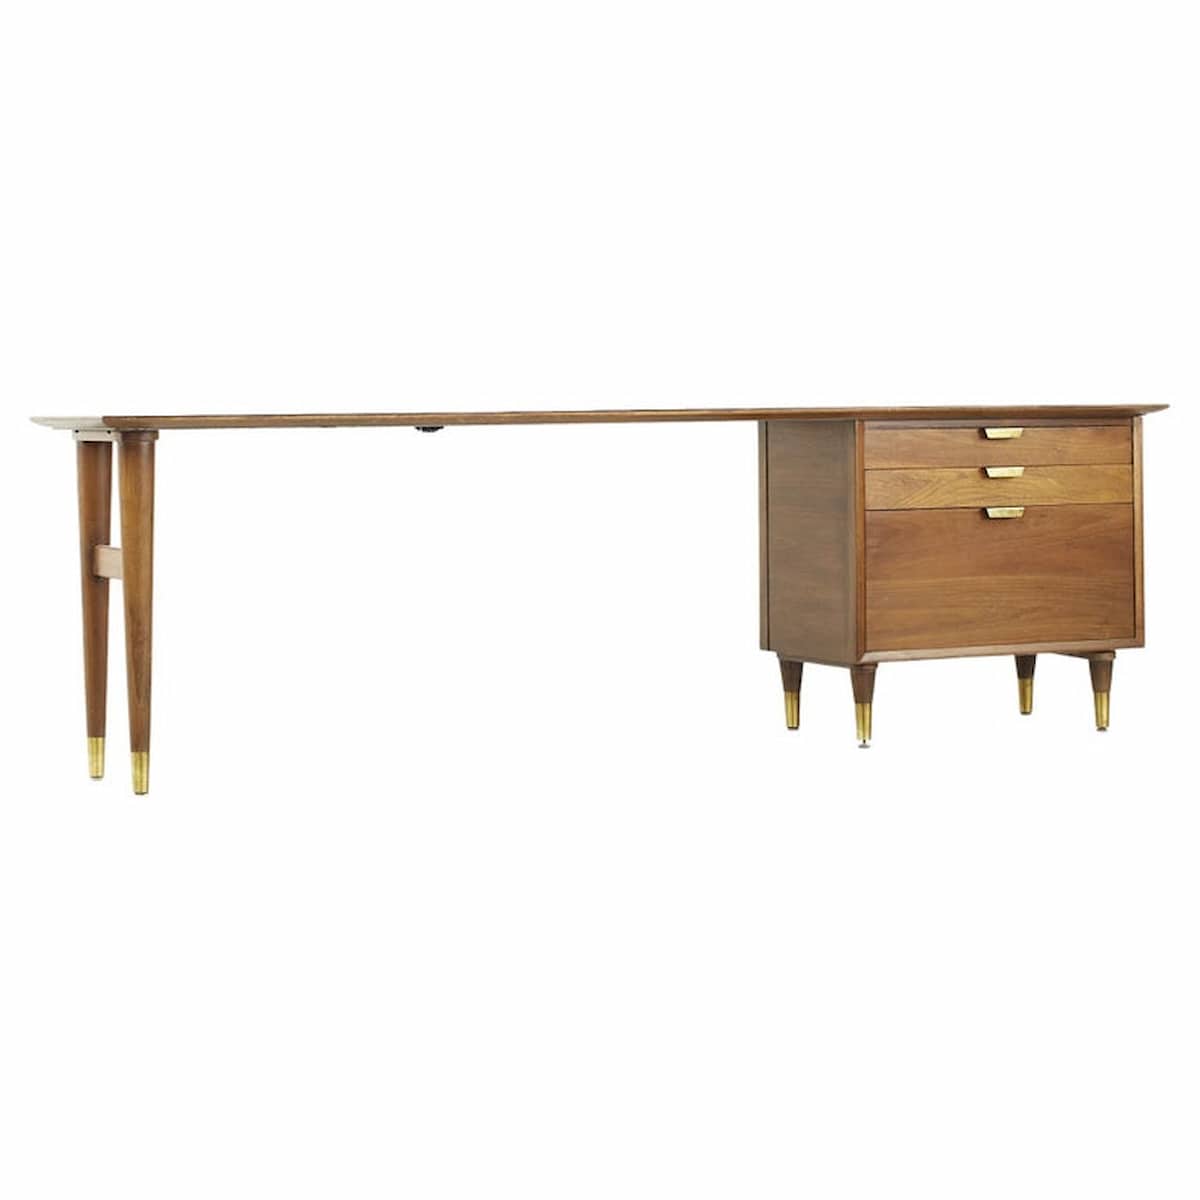 Standard Furniture Mid Century Walnut and Brass Desk Credenza